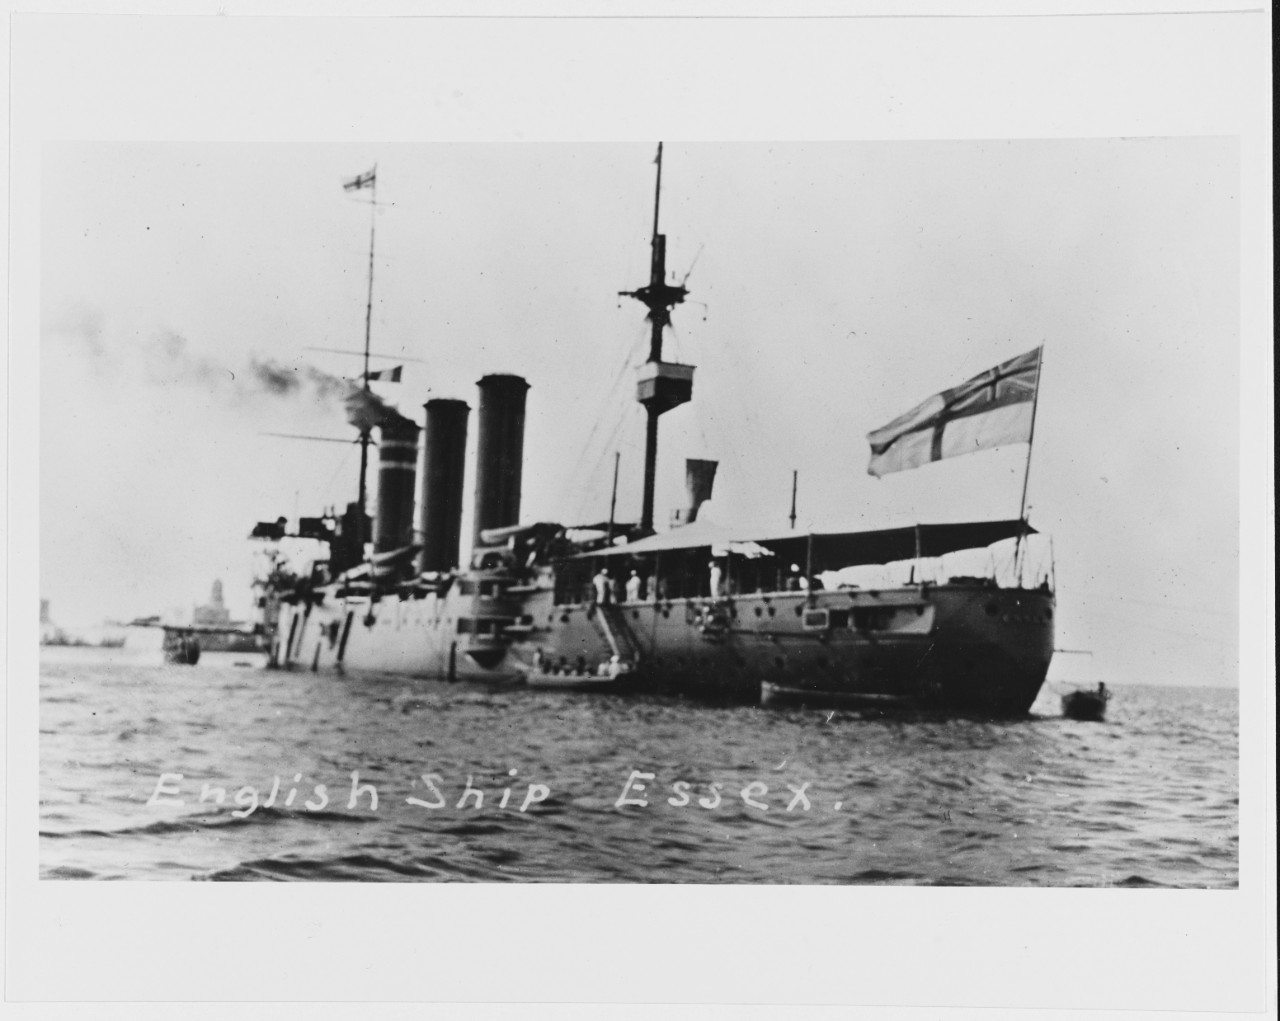 HMS ESSEX (British Armored Cruiser, 1901)